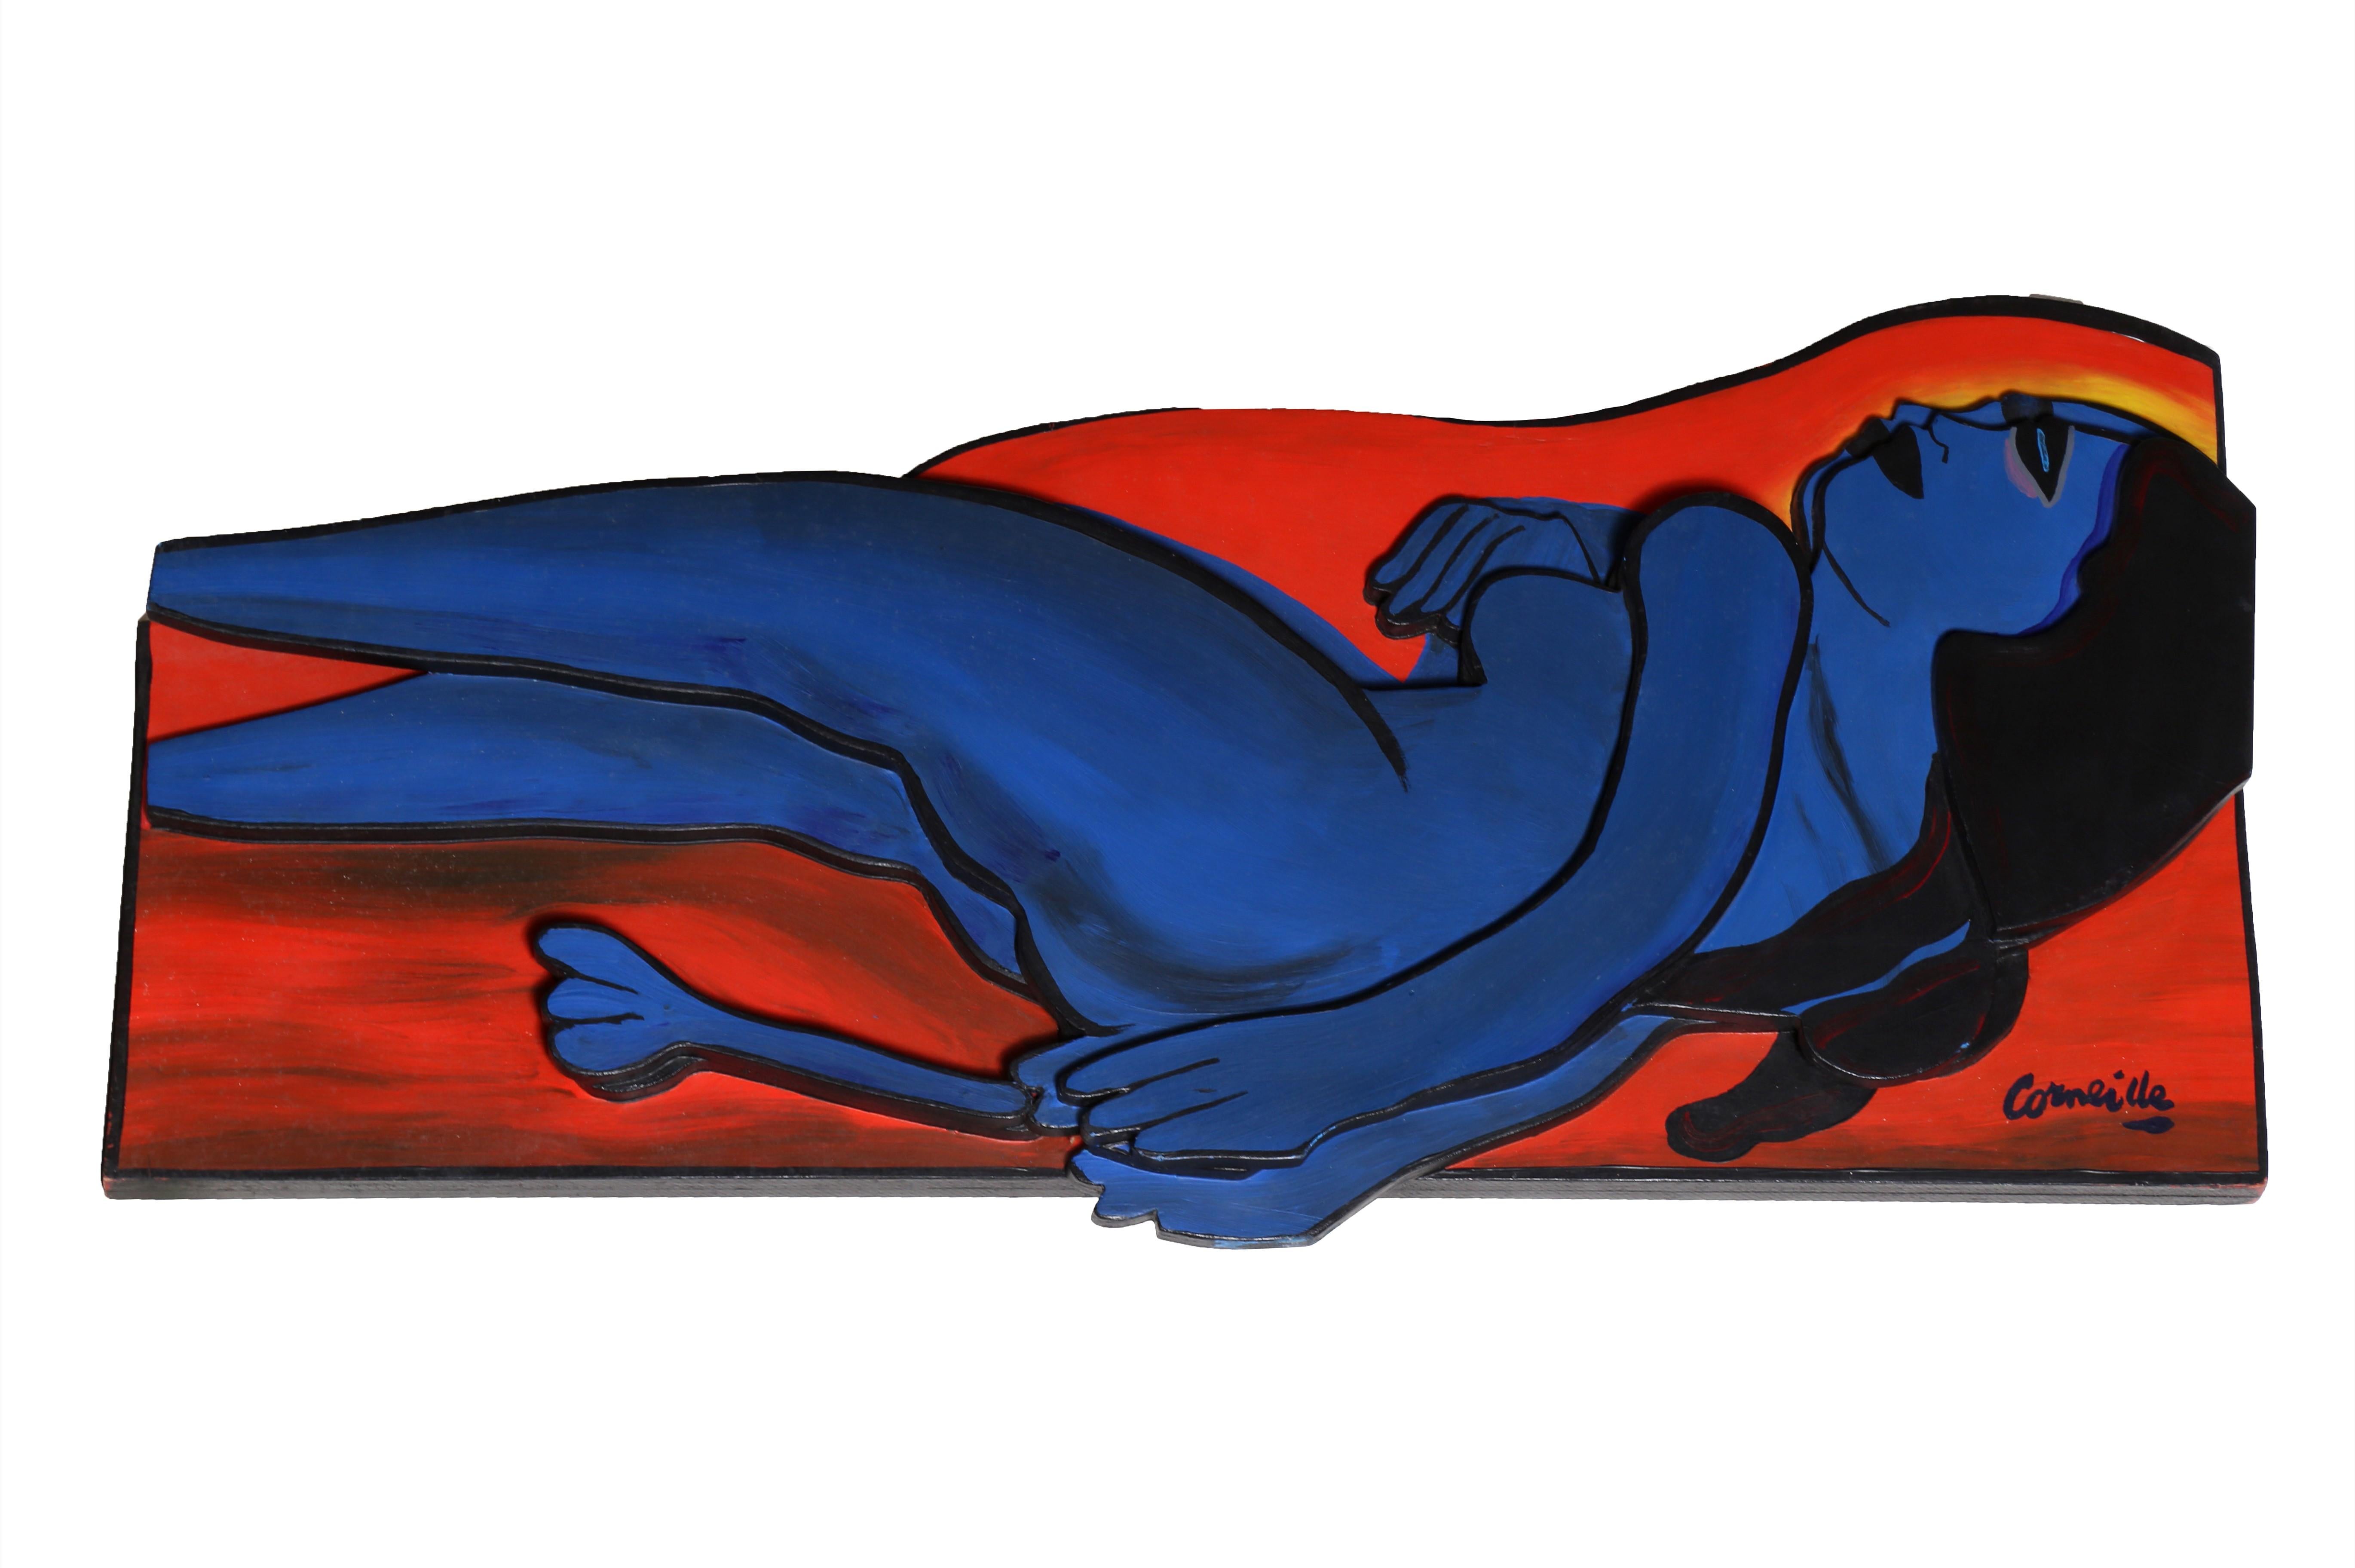 Diese bemalte Holzskulptur des belgischen Künstlers Corneille aus der Zeit um 1980 ist eine expressionistische Darstellung von zwei Akten.  Corneille wurde von Miró, Picasso und Paul Klee beeinflusst, behauptete aber, die tiefste Verbindung zu van